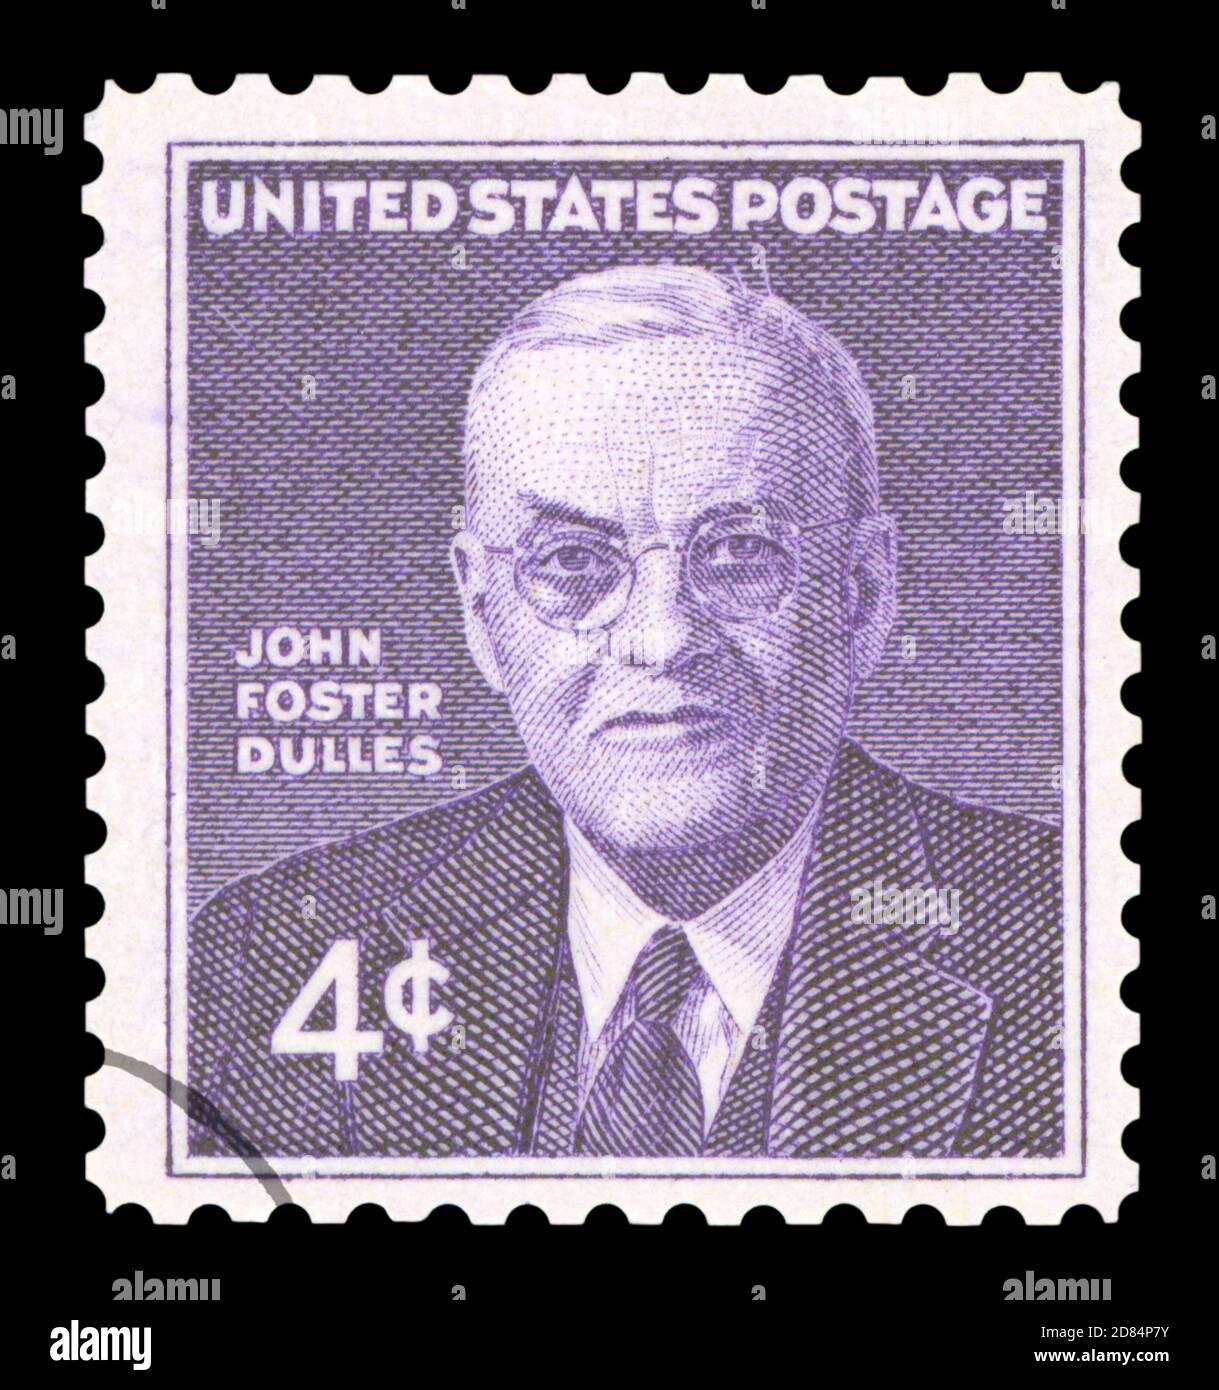 STATI UNITI D'AMERICA - CIRCA 1960: Un francobollo usato dagli Stati Uniti, raffigurante un'illustrazione dello storico politico americano John Foster Dulles Foto Stock